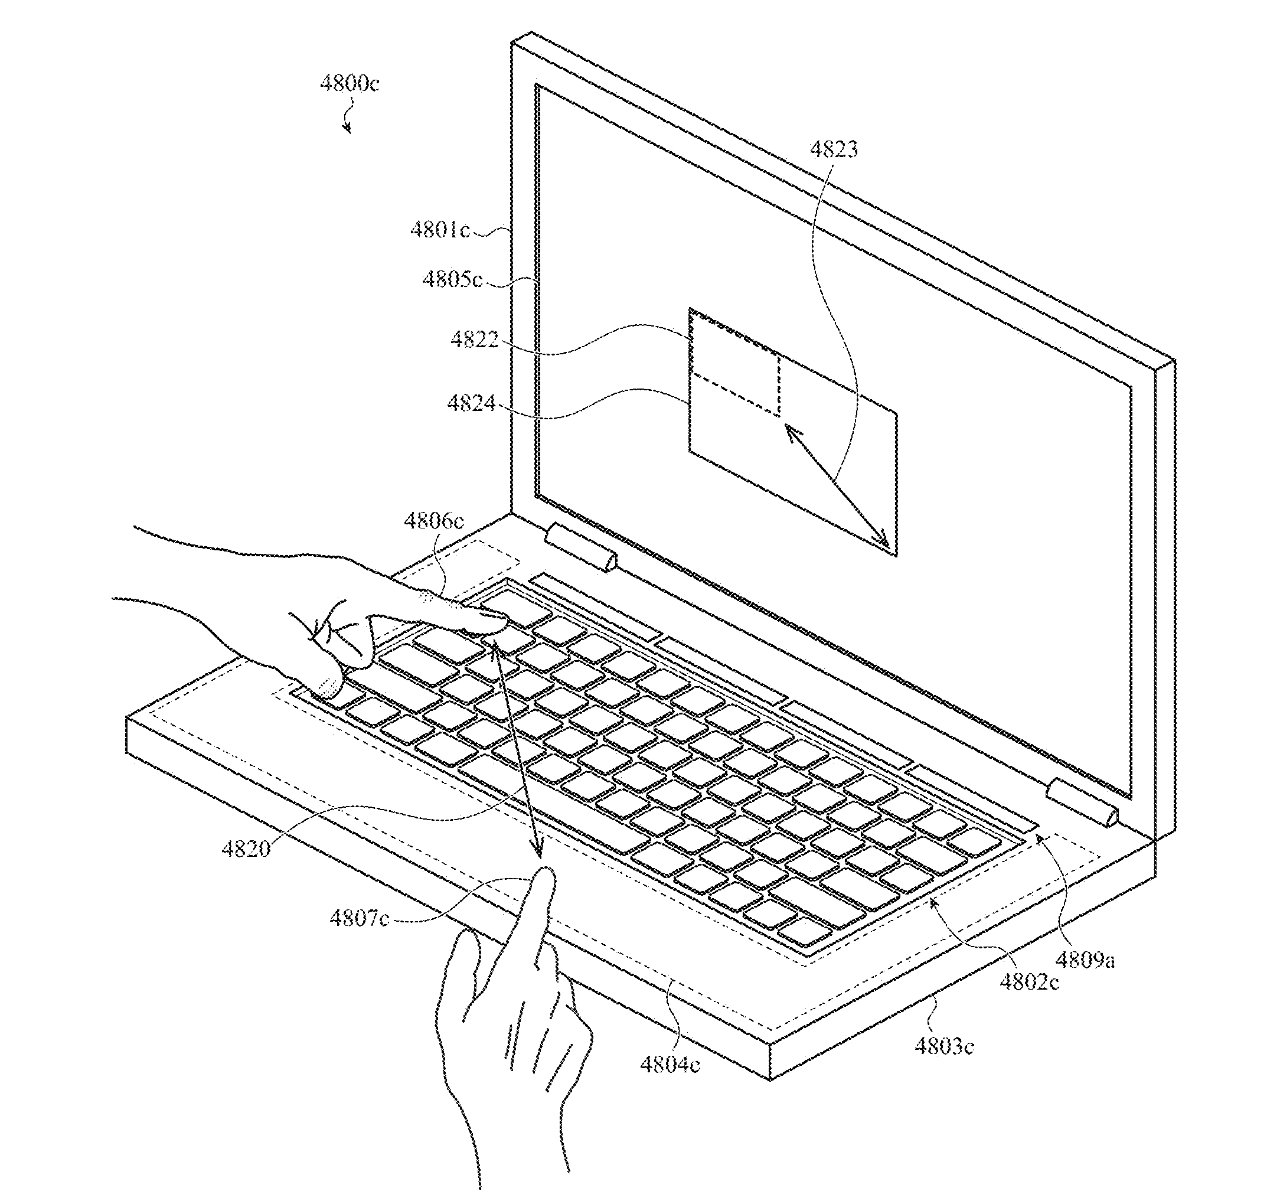 Detail aus dem Patent, das zeigt, wie Sie selbst bei angezeigter Tastatur Linien auf dem Bildschirm zeichnen können